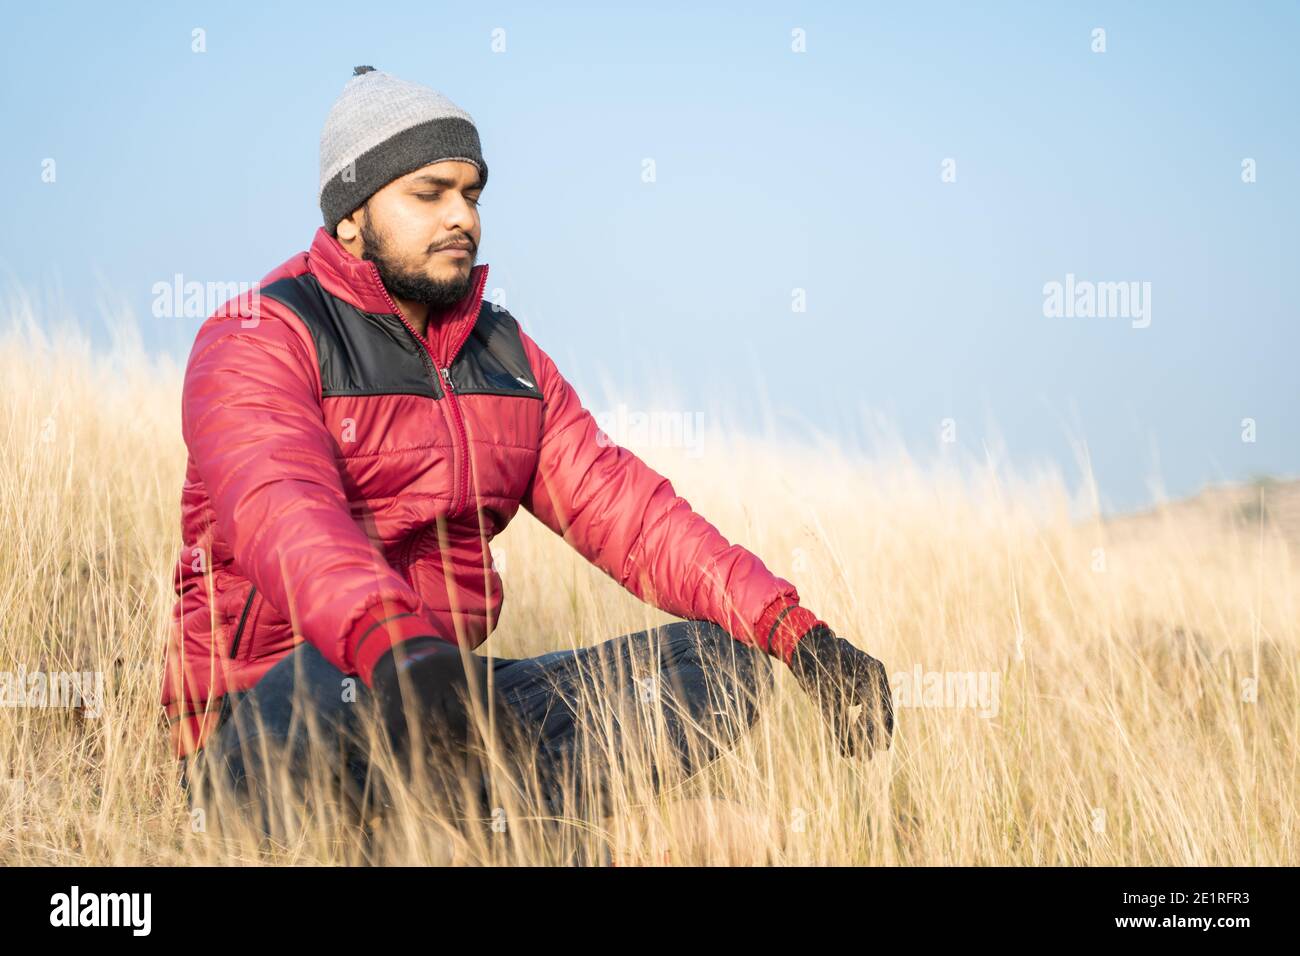 Reisende meditieren auf dem Gipfel des Berges während des kalten Morgens - Konzept der Verbindung mit der Natur, Erleuchtung und Achtsamkeit Stockfoto